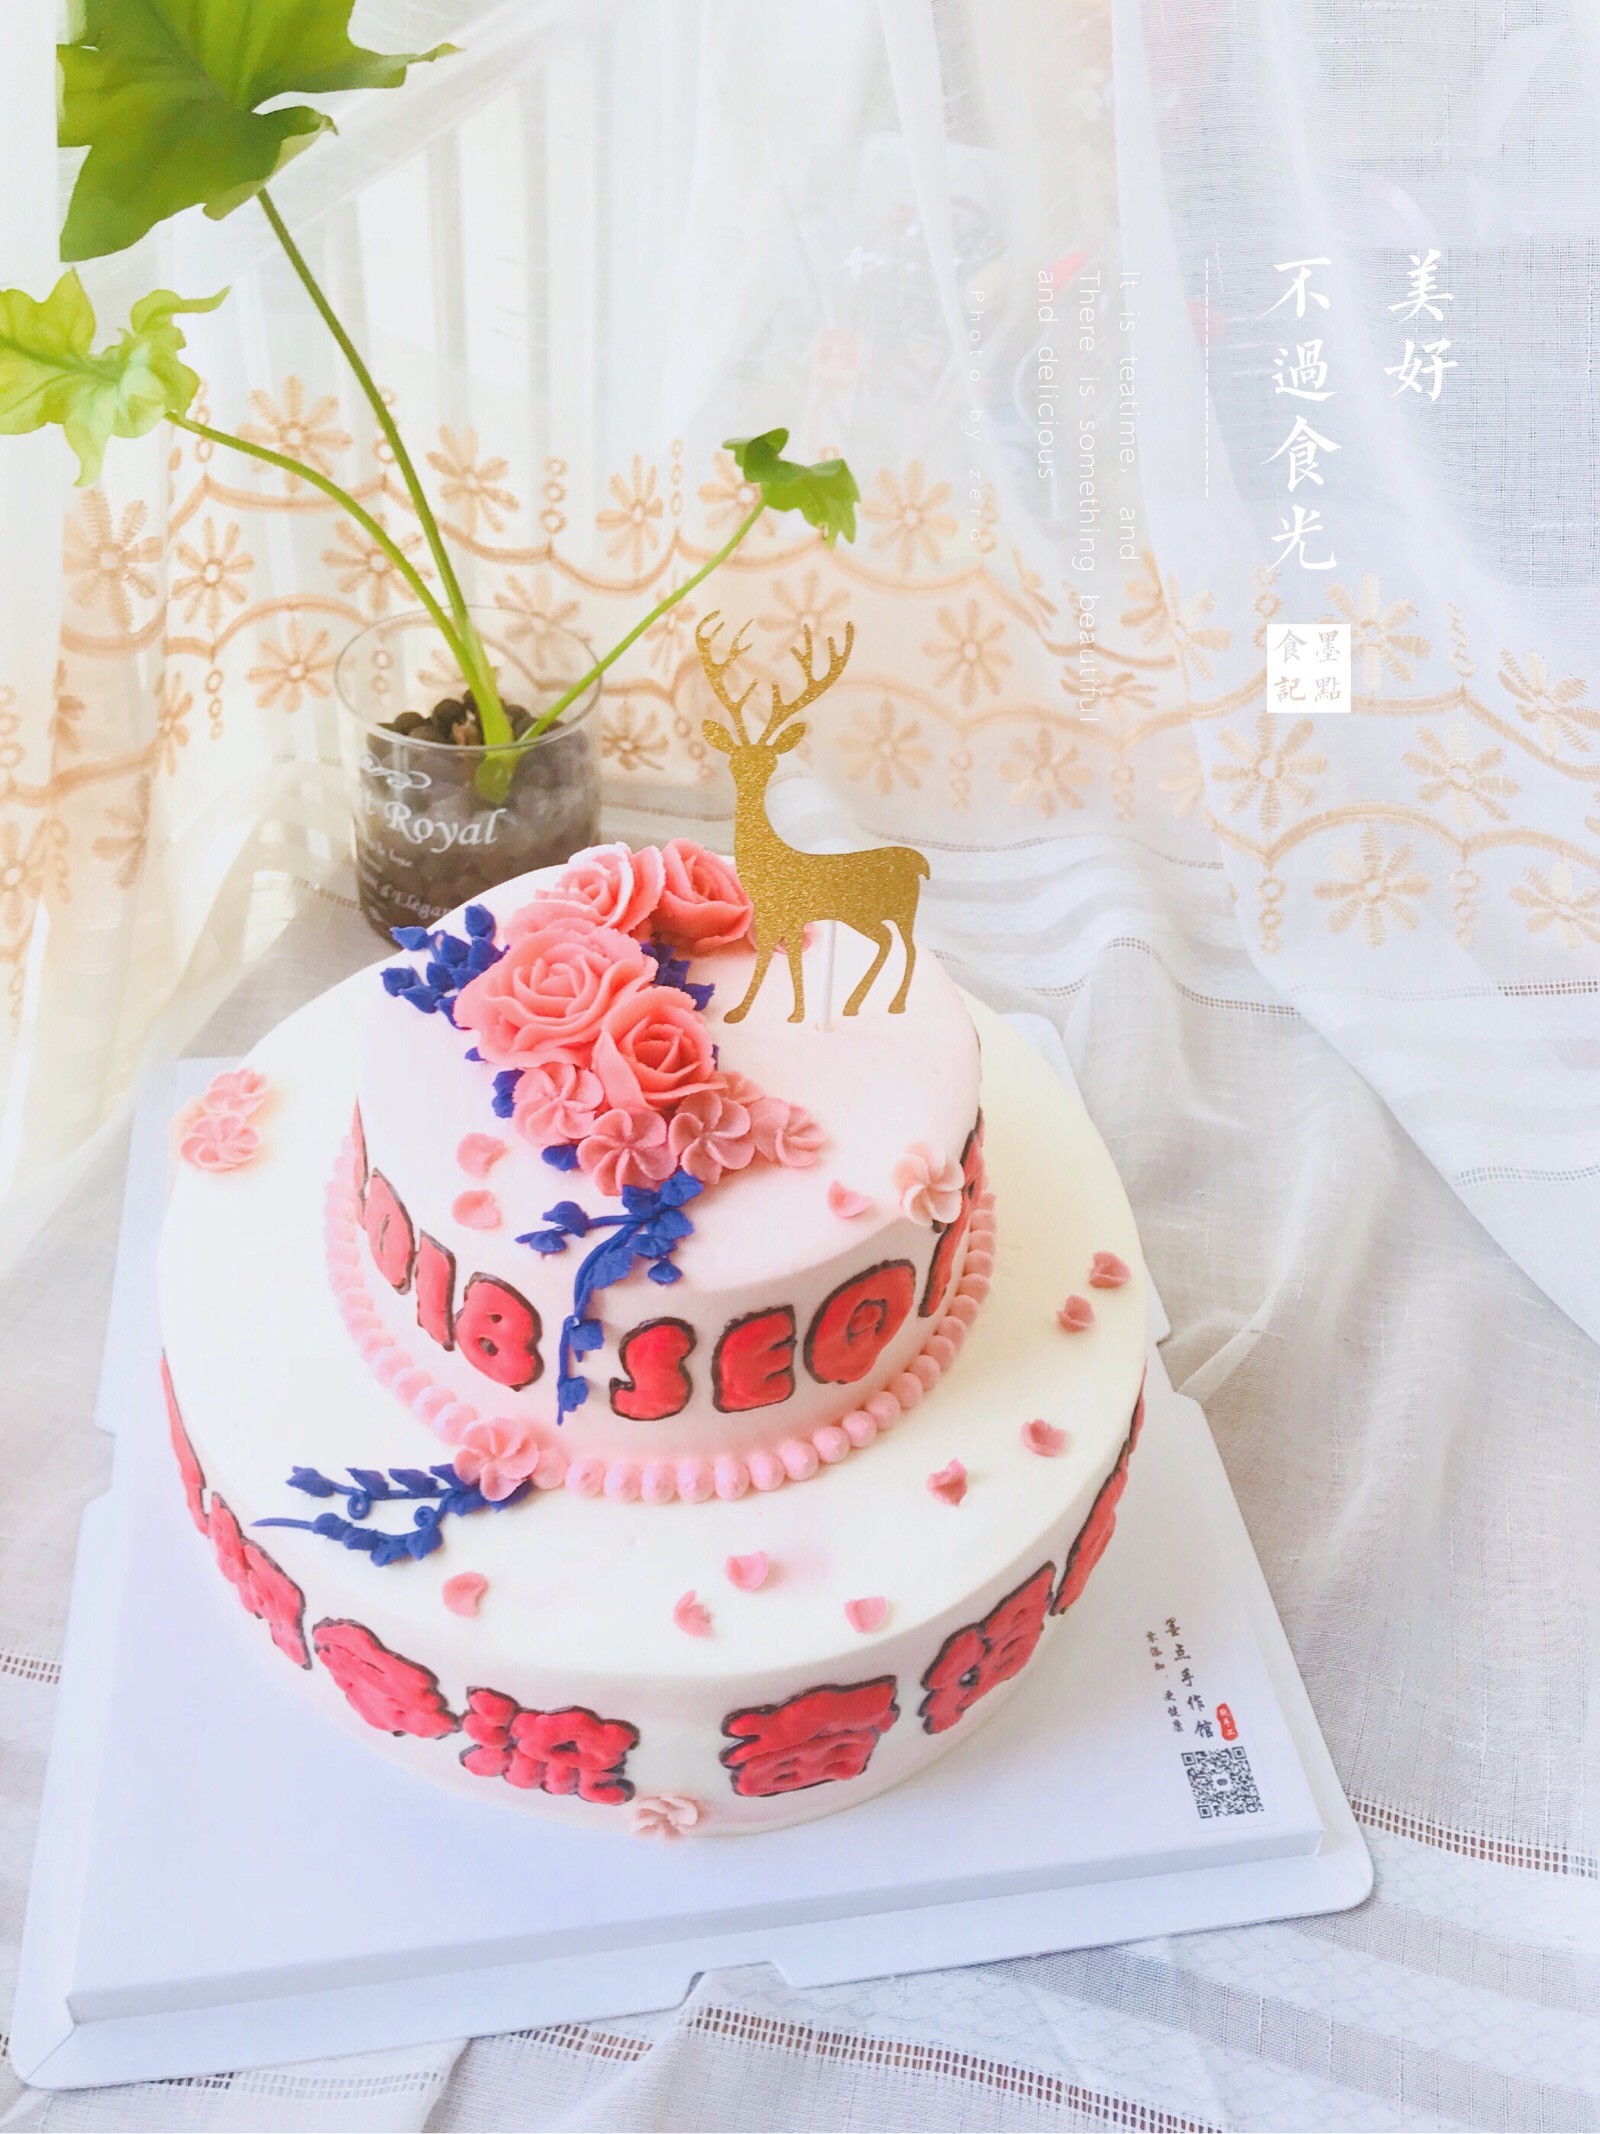 豆沙裱花双层蛋糕 庆功蛋糕